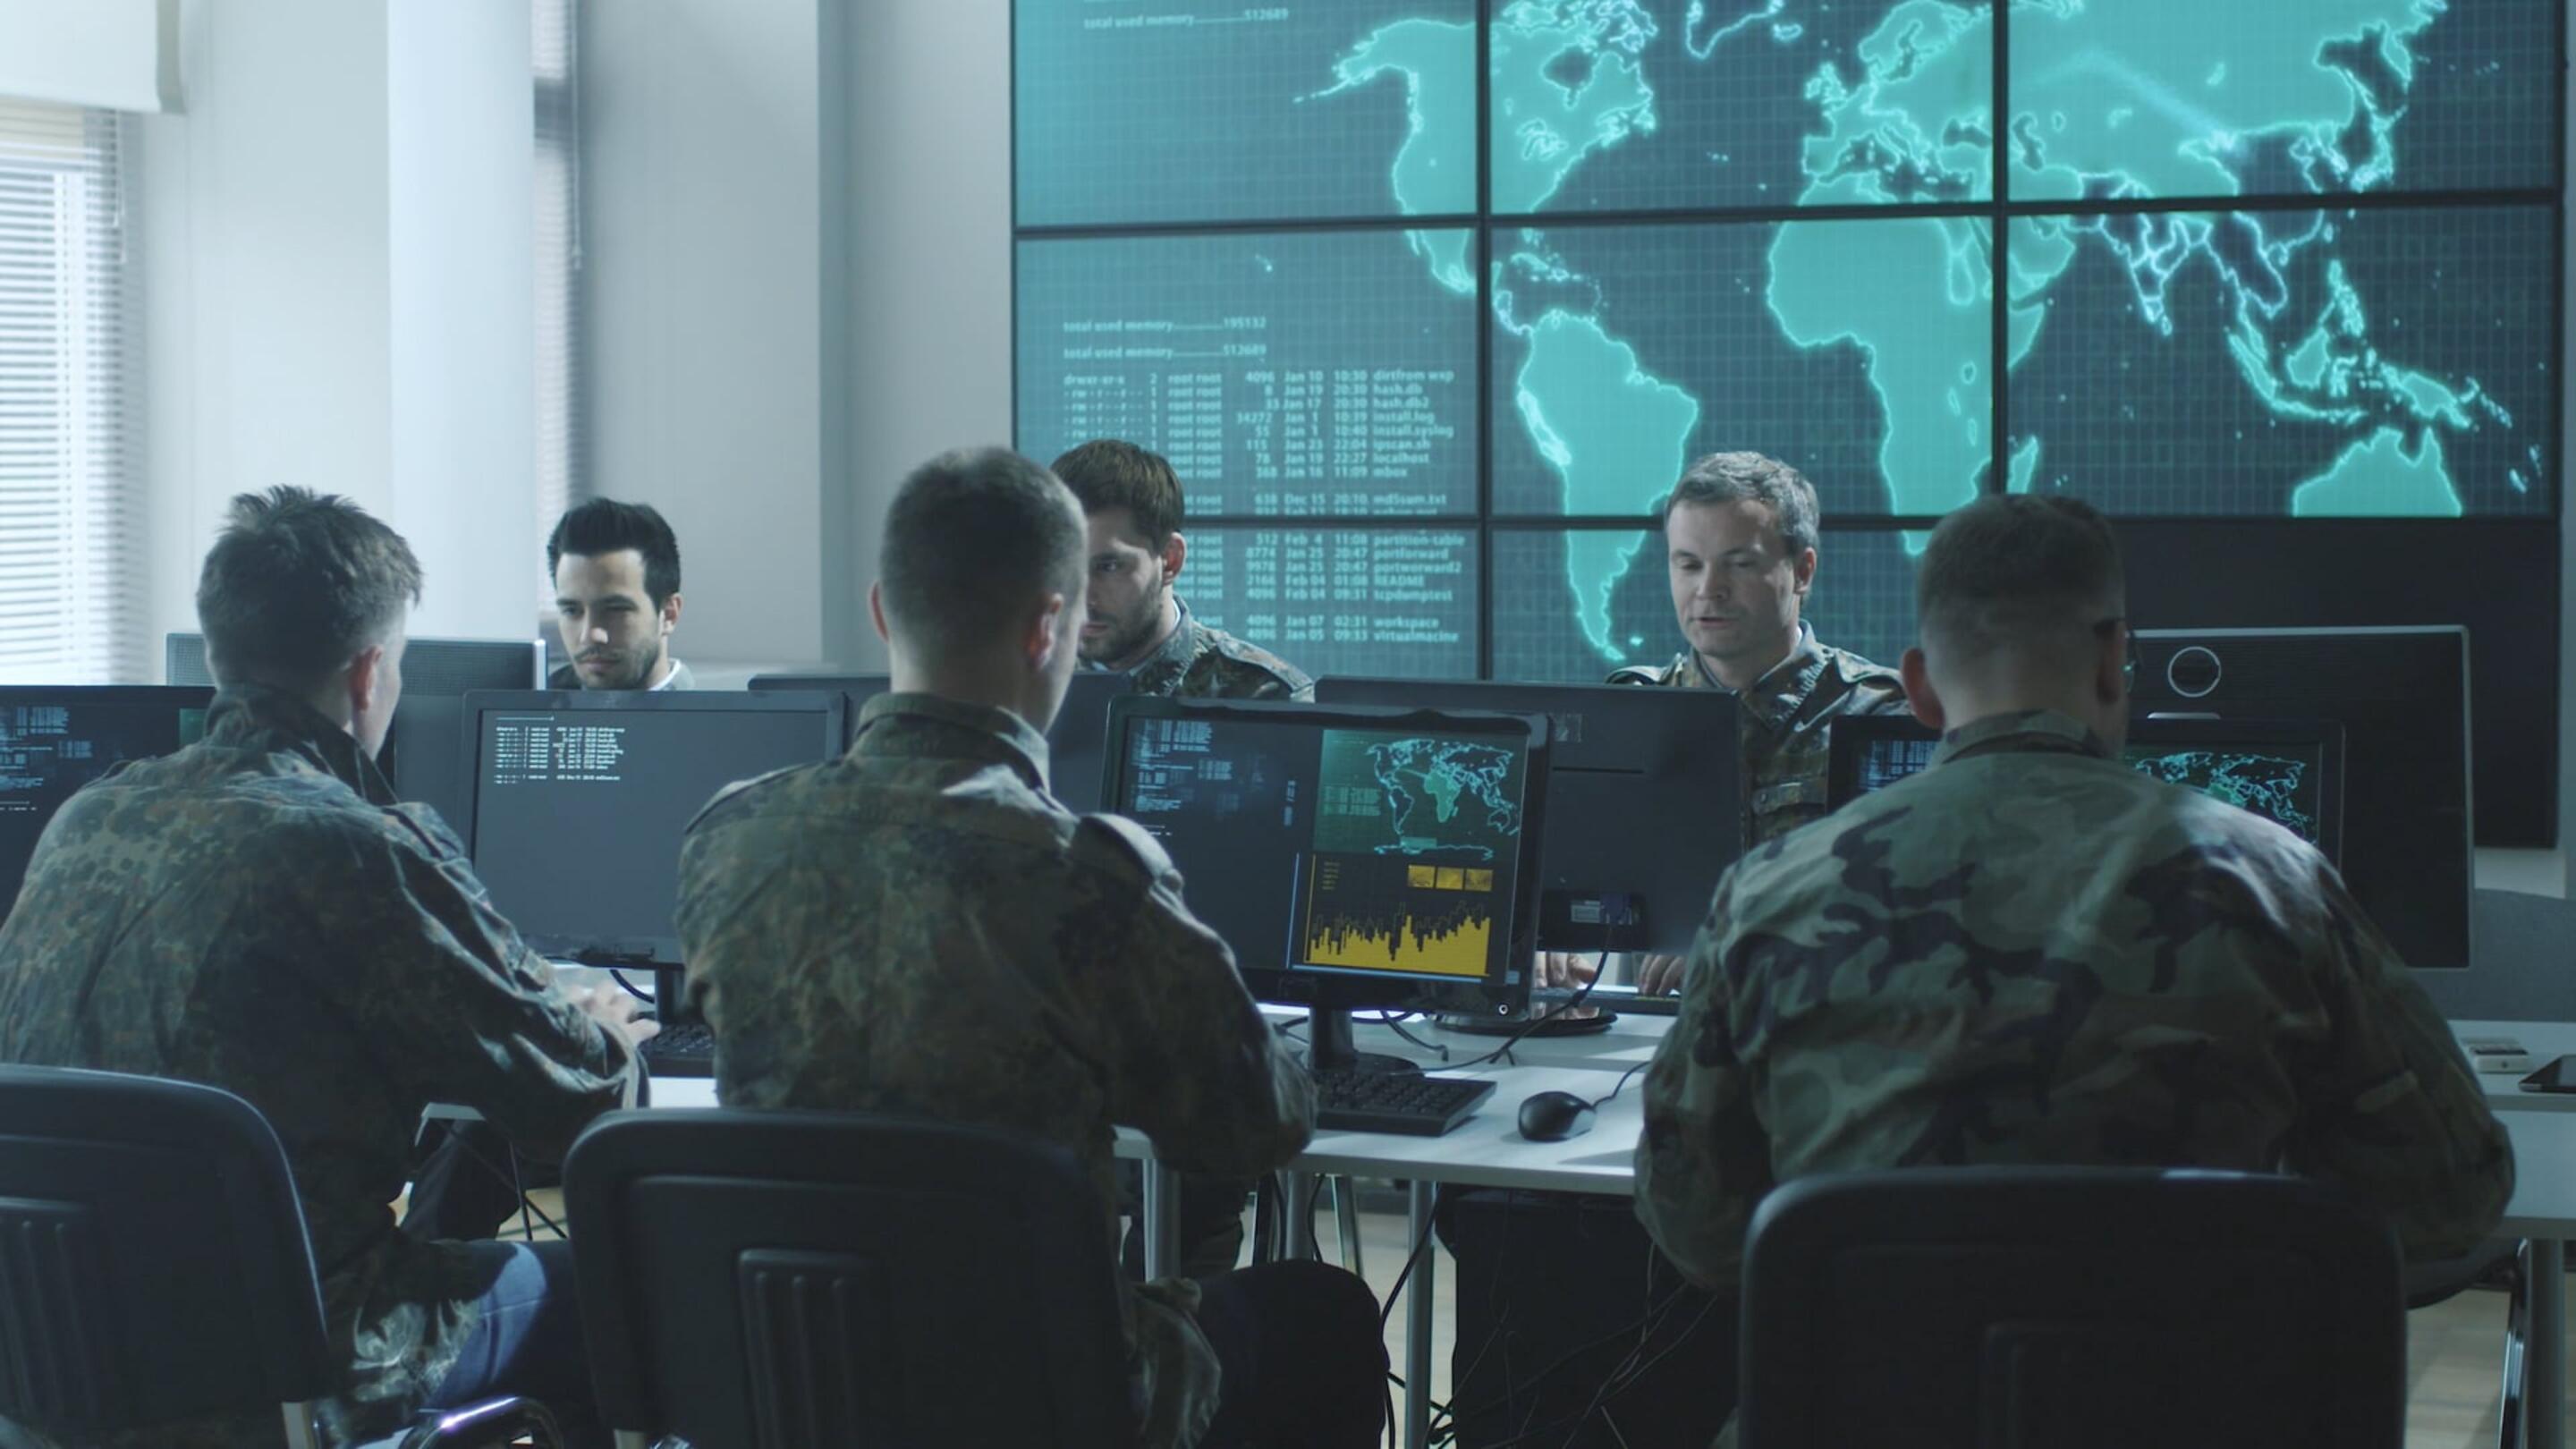 Tempest - Tempest sekumpulan lelaki berpakaian seragam tentera duduk di komputer